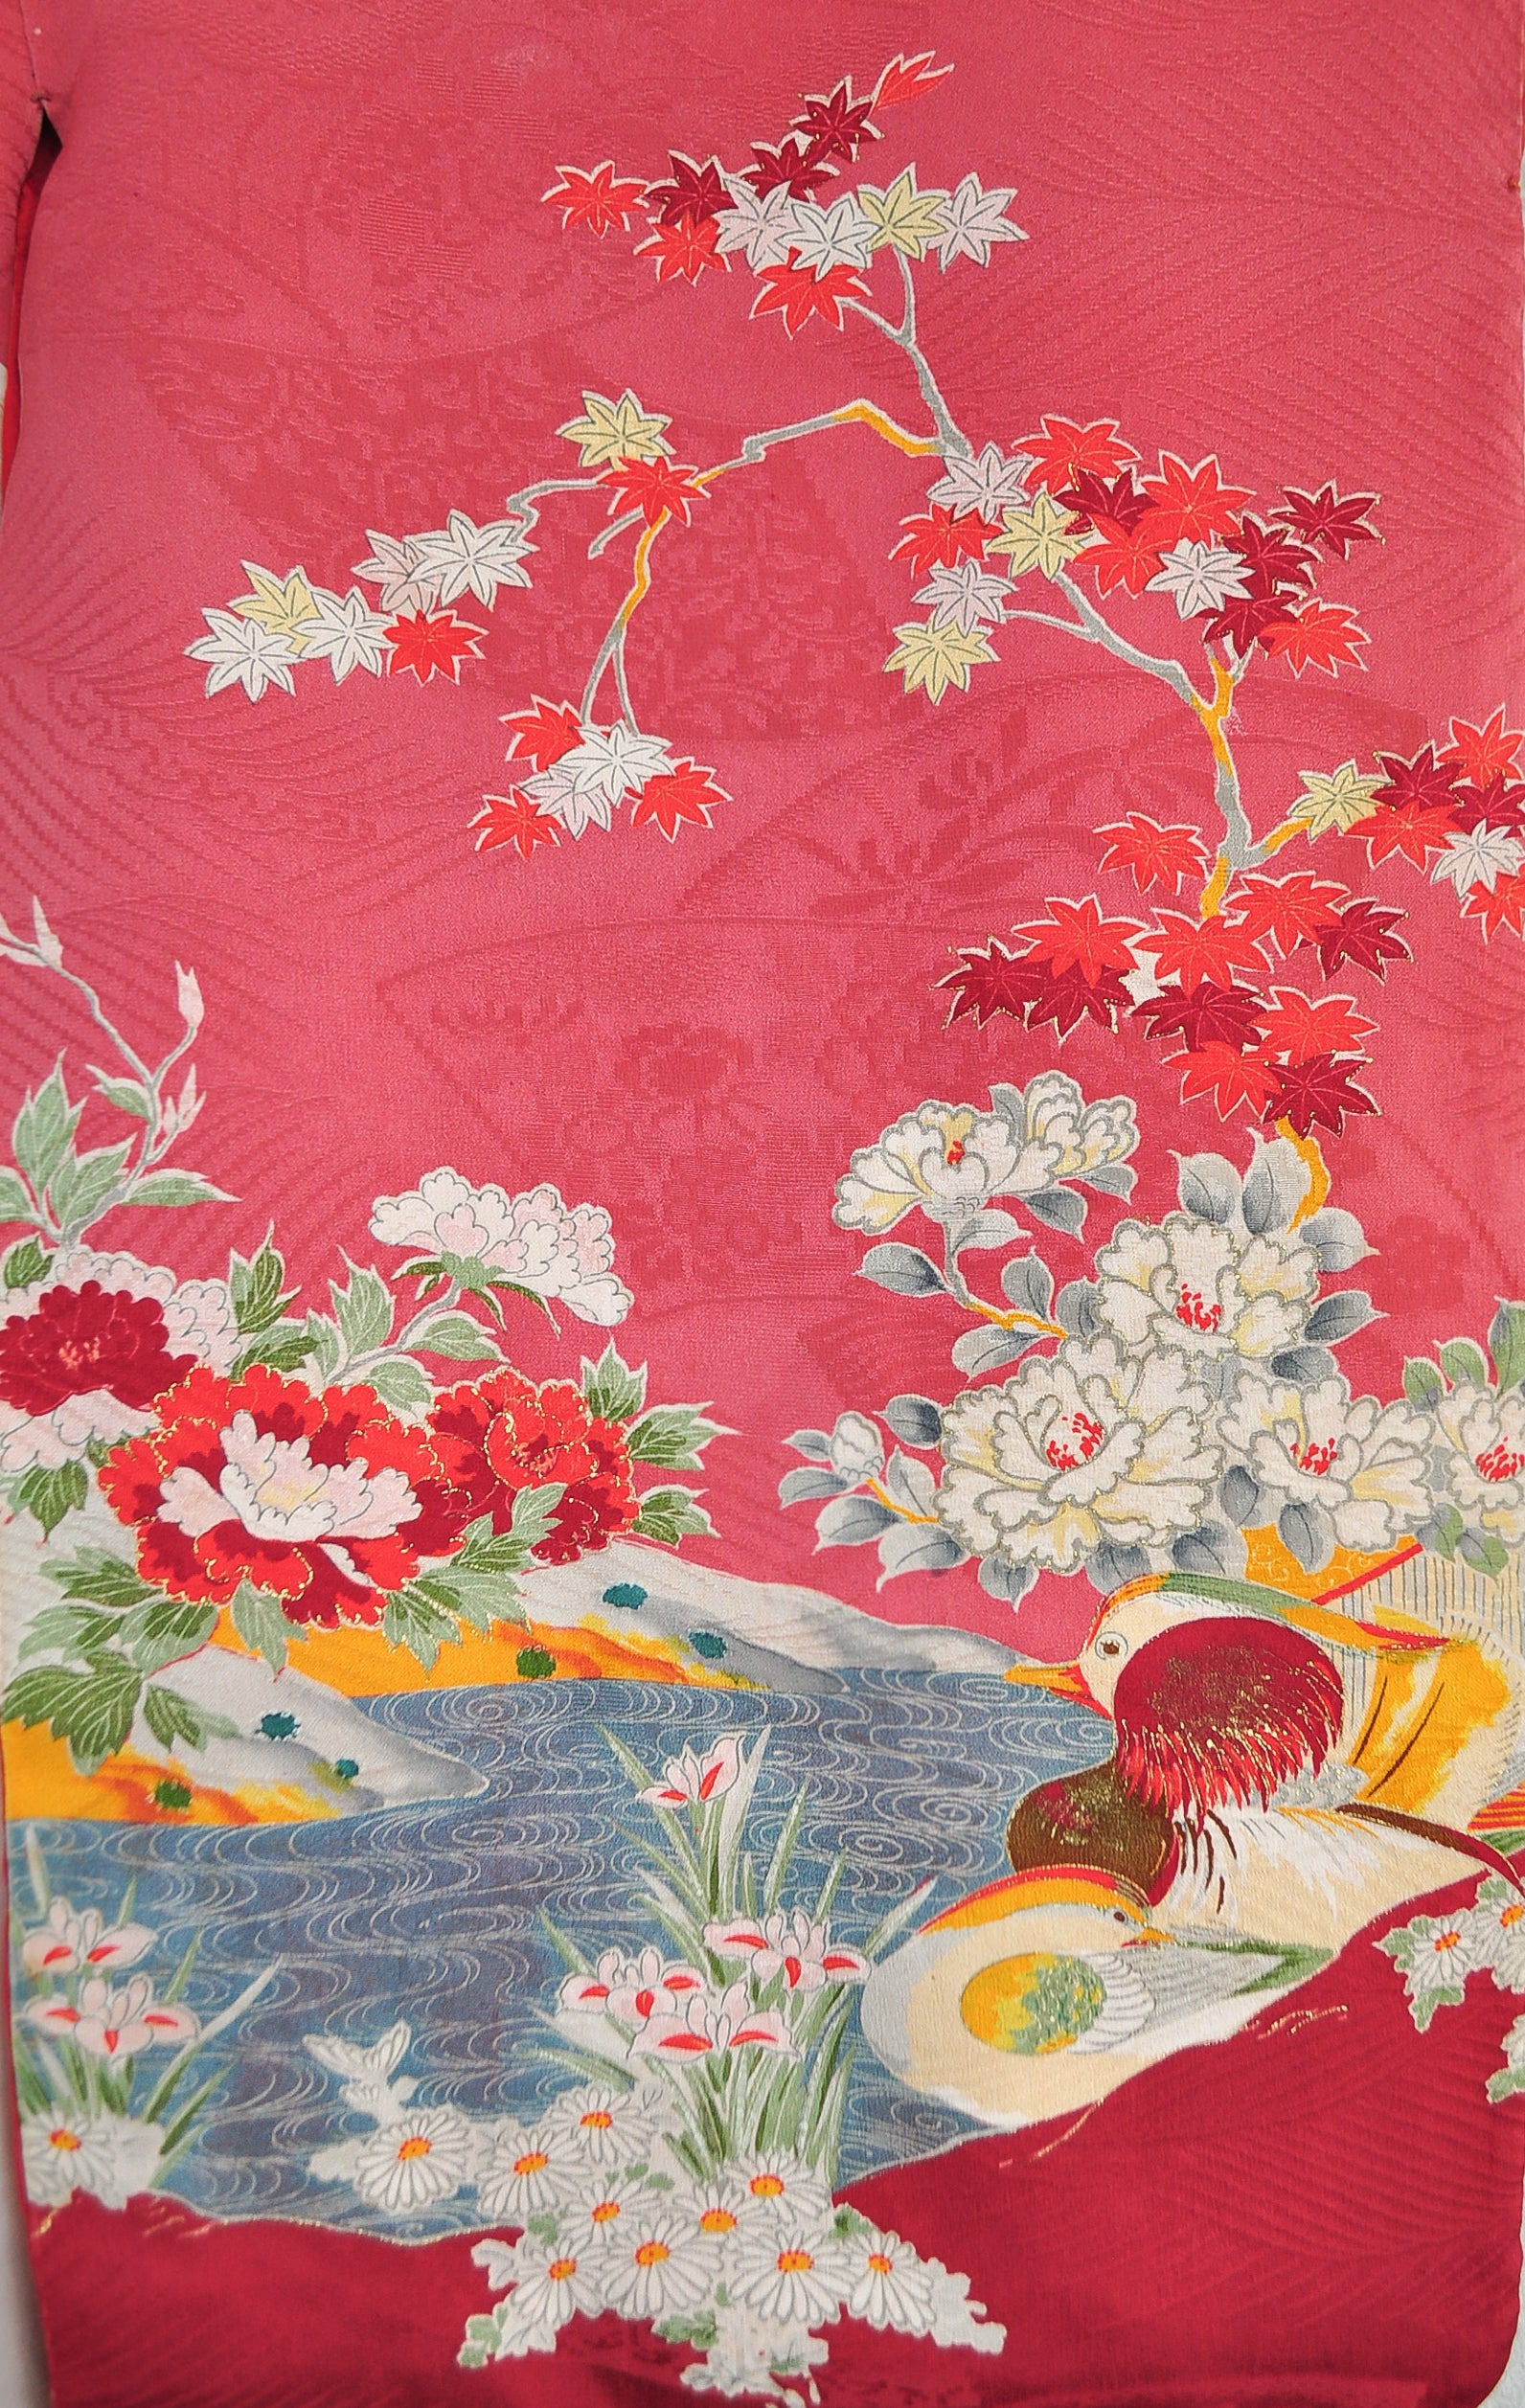 Eternity of Love Antique Kimono